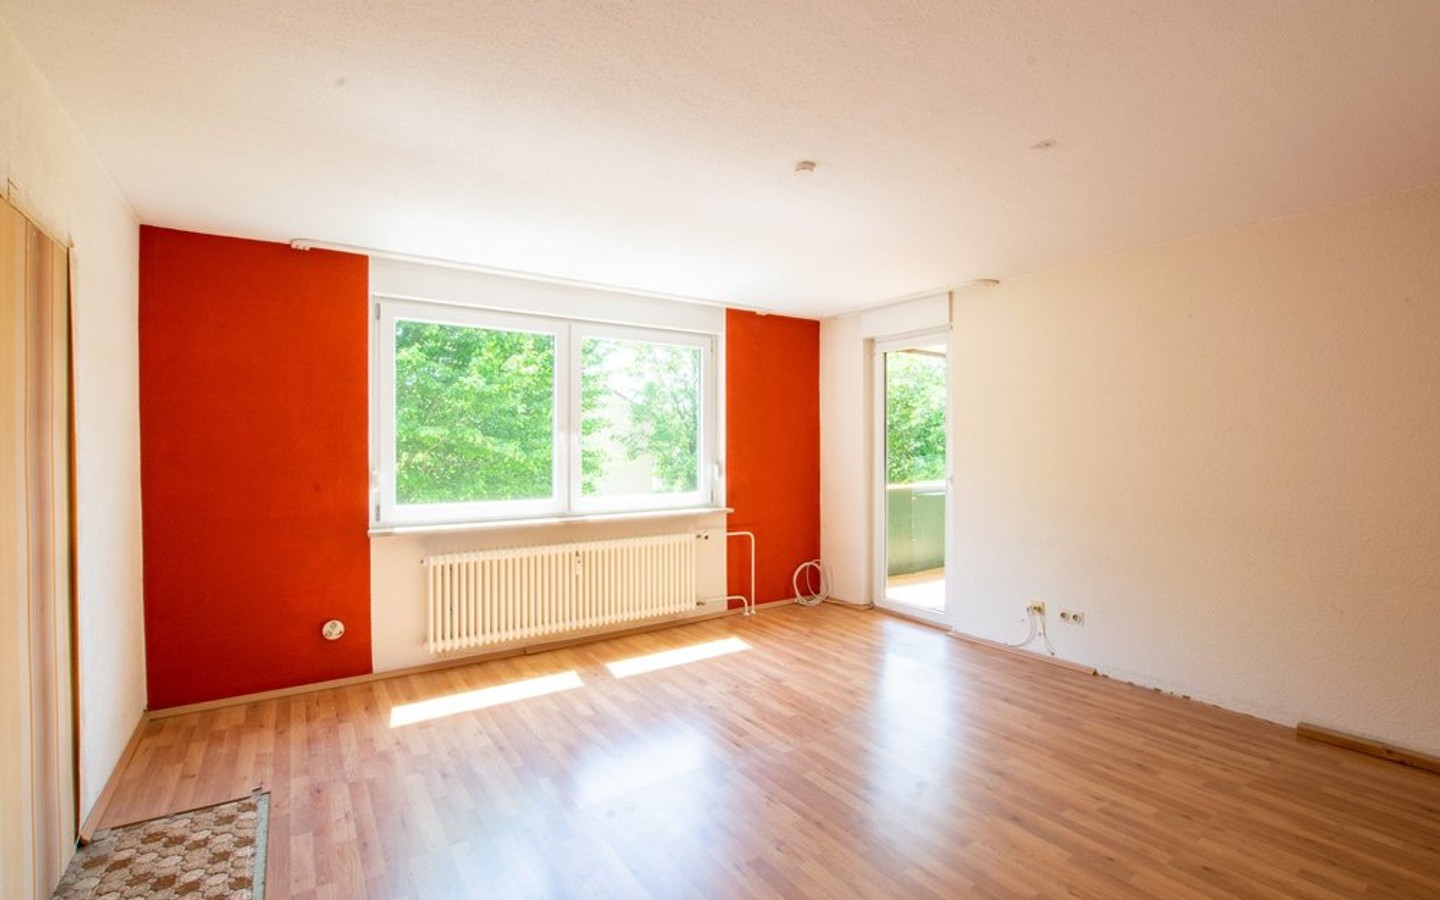 Wohnzimmer - Eppelheim: Großzügige 3,5-Zimmer-Wohnung mit Loggia, Garage und Renovierungsbedarf